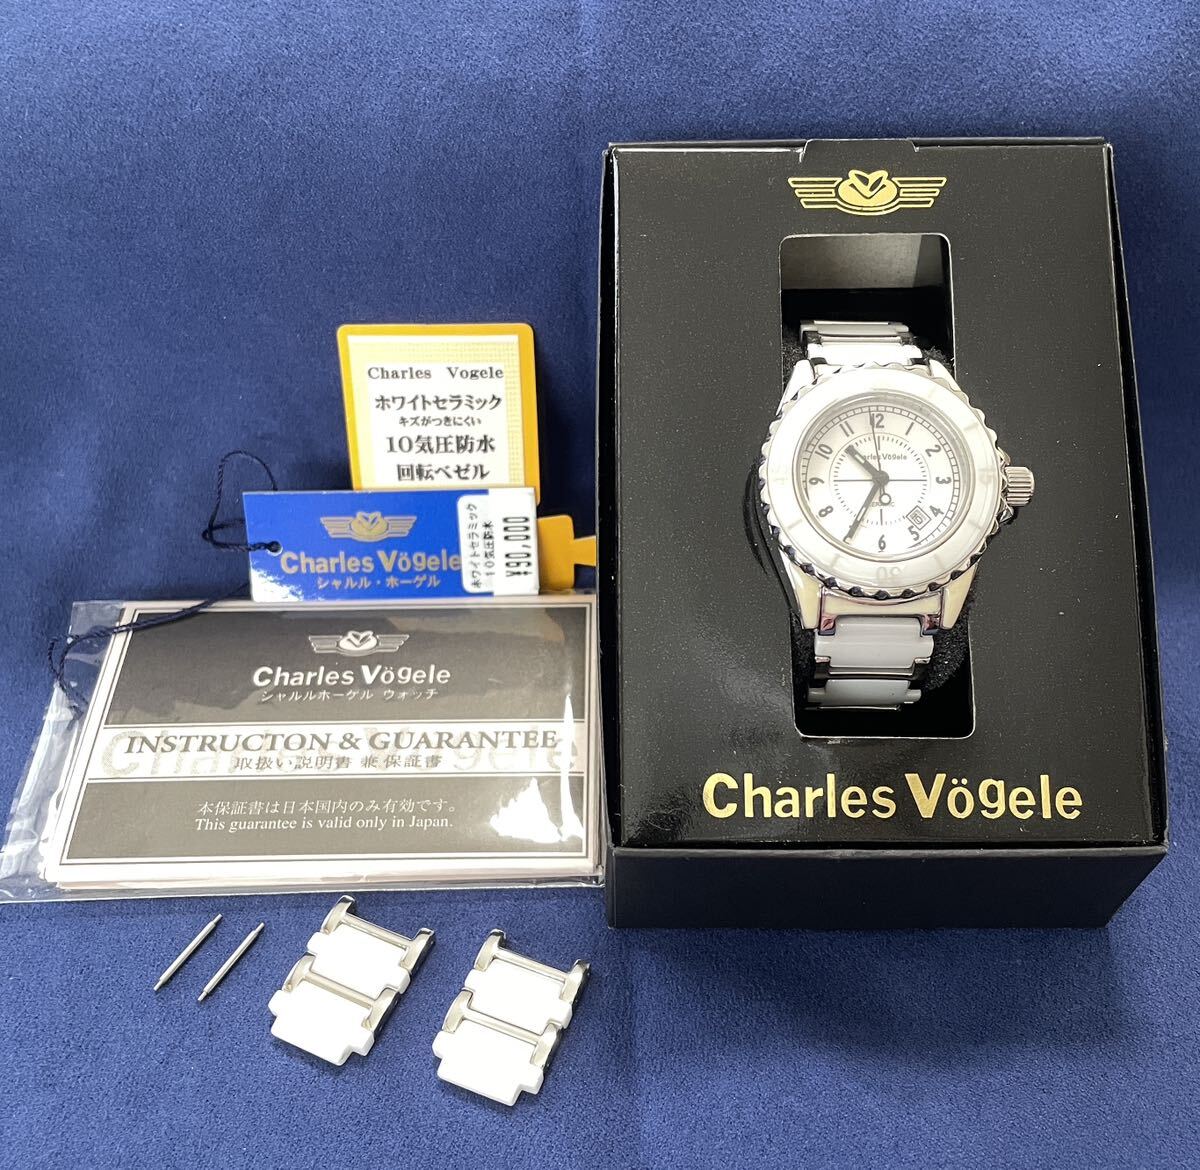 中古レディース腕時計 Charles Vgele シャルルホーゲル セラミック CV-7844 クオーツ (4.14)の画像1